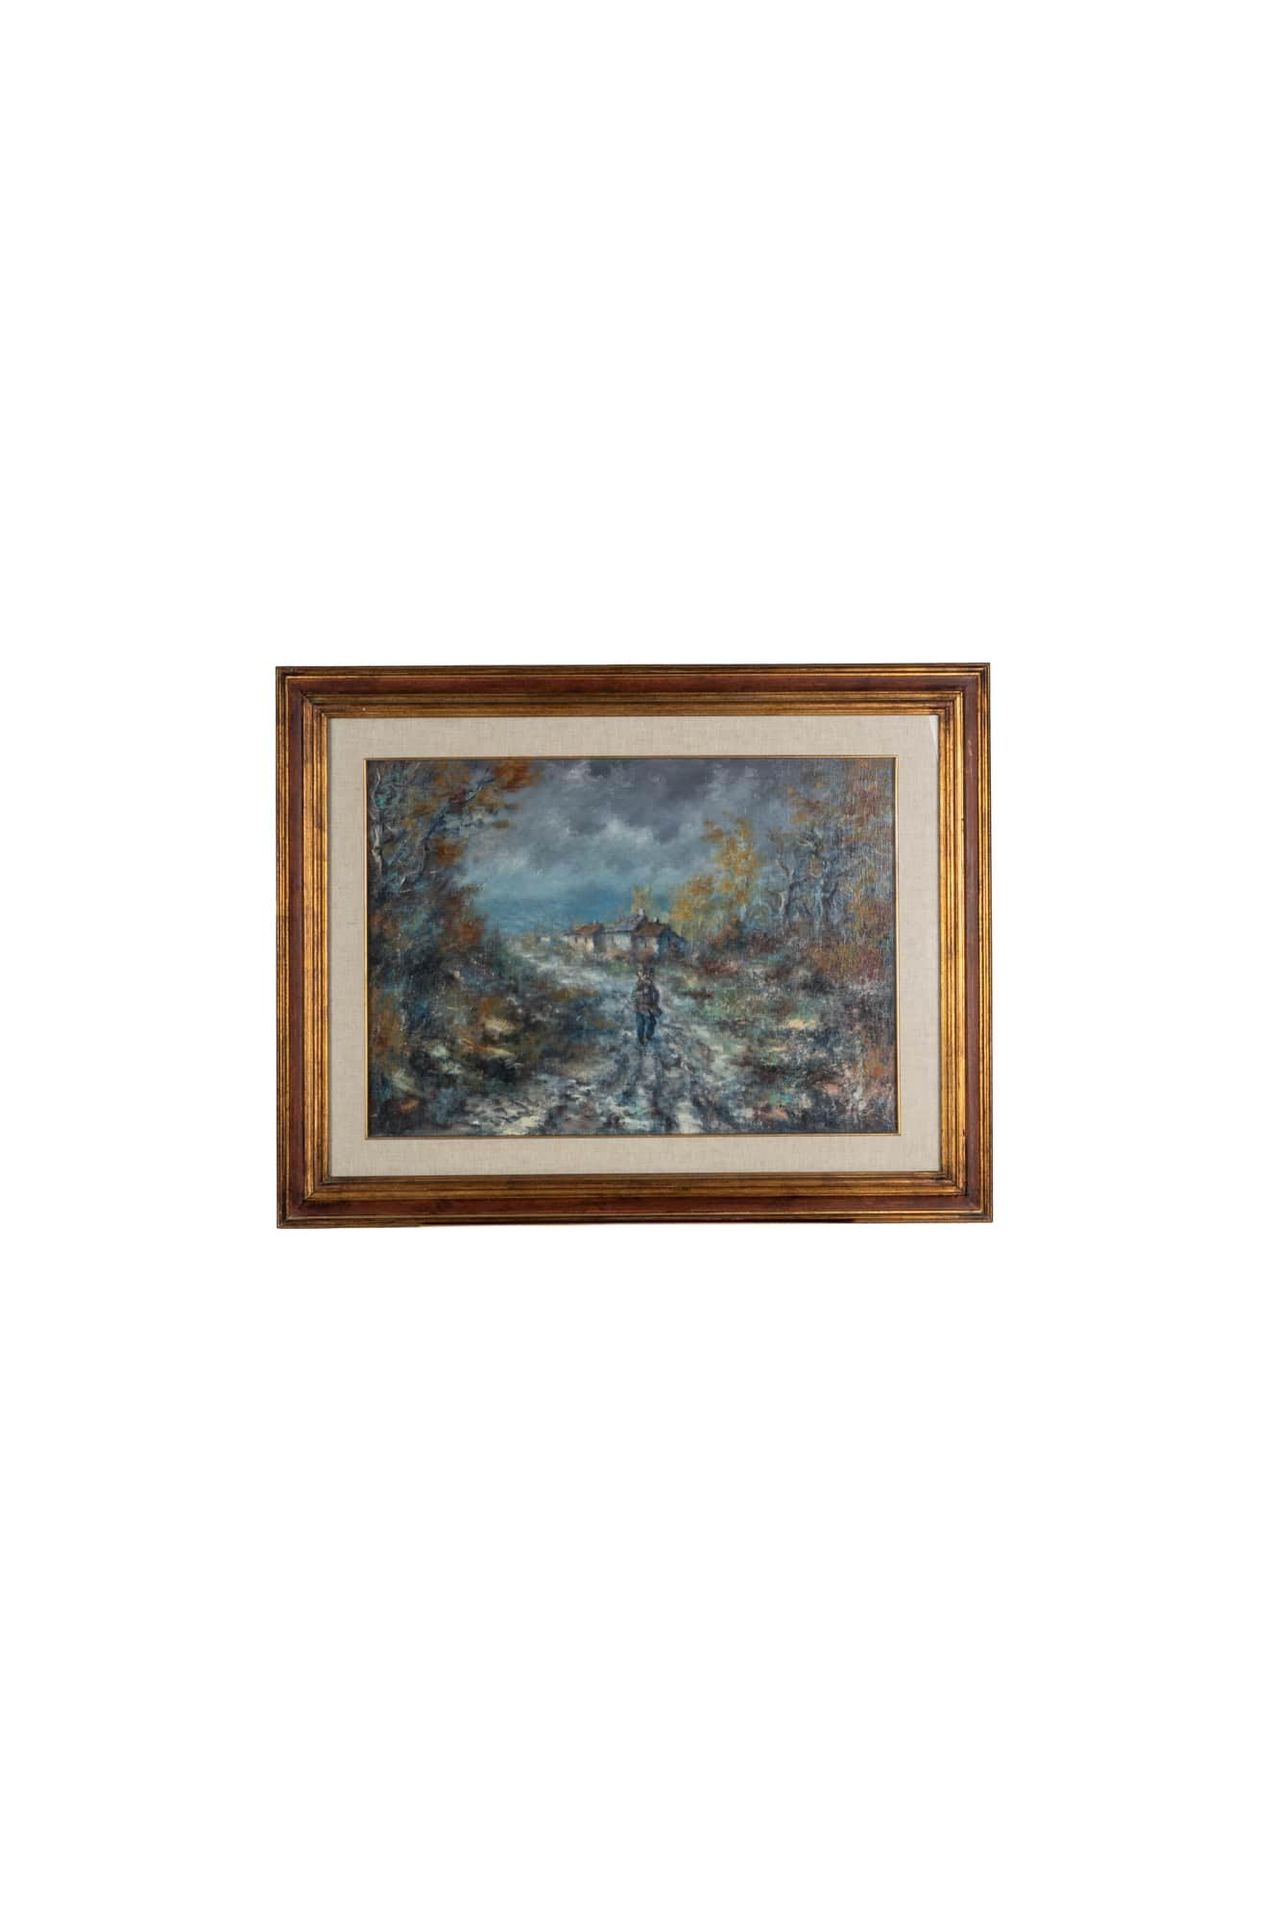 VITTORIO ANGINI (Arezzo 1946) El otoño

1975

óleo sobre lienzo

cm 50x70

firma&hellip;